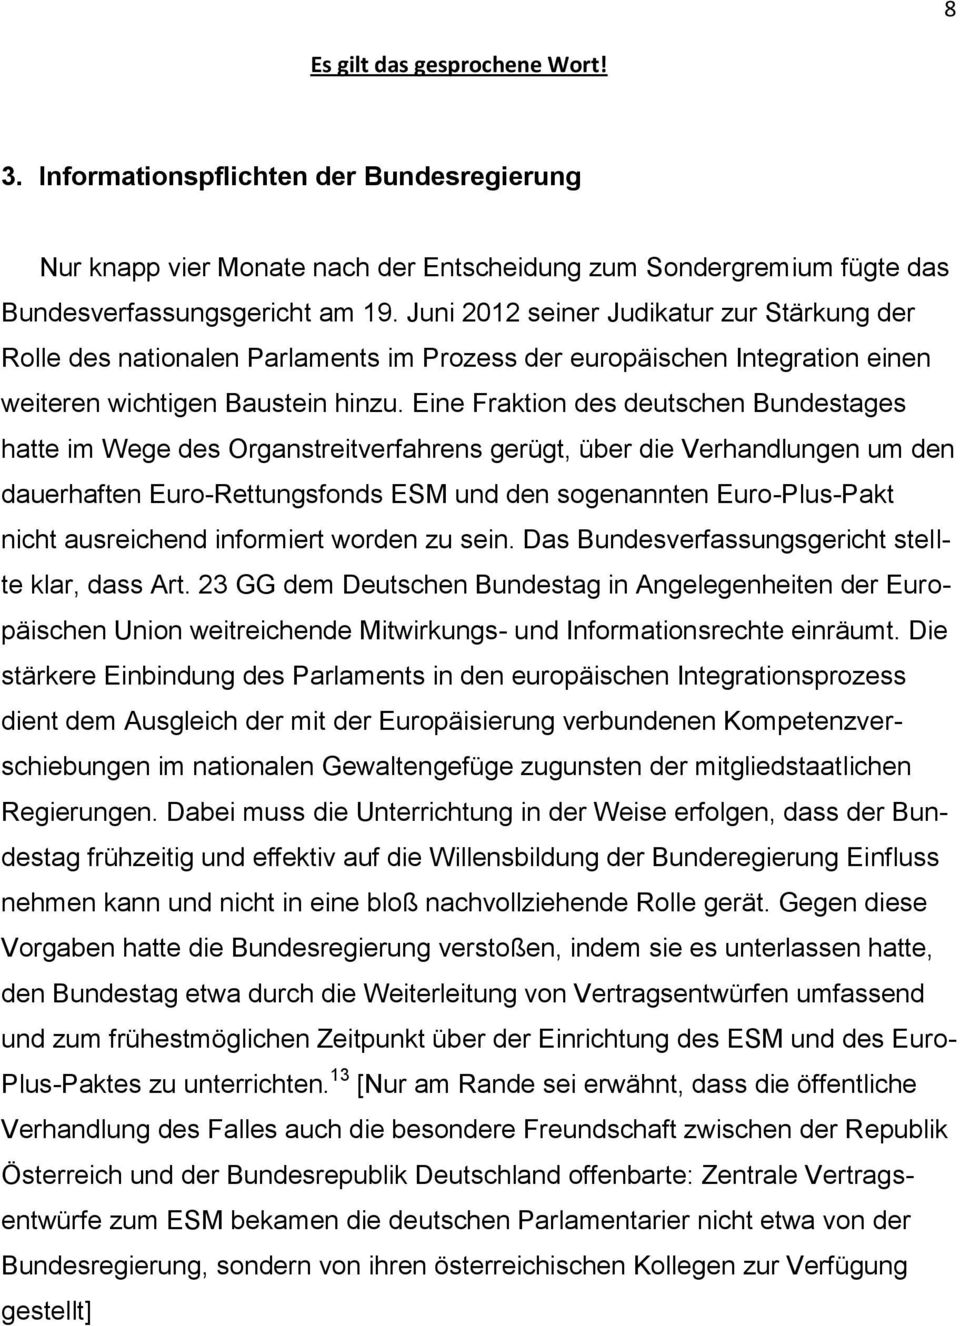 Eine Fraktion des deutschen Bundestages hatte im Wege des Organstreitverfahrens gerügt, über die Verhandlungen um den dauerhaften Euro-Rettungsfonds ESM und den sogenannten Euro-Plus-Pakt nicht